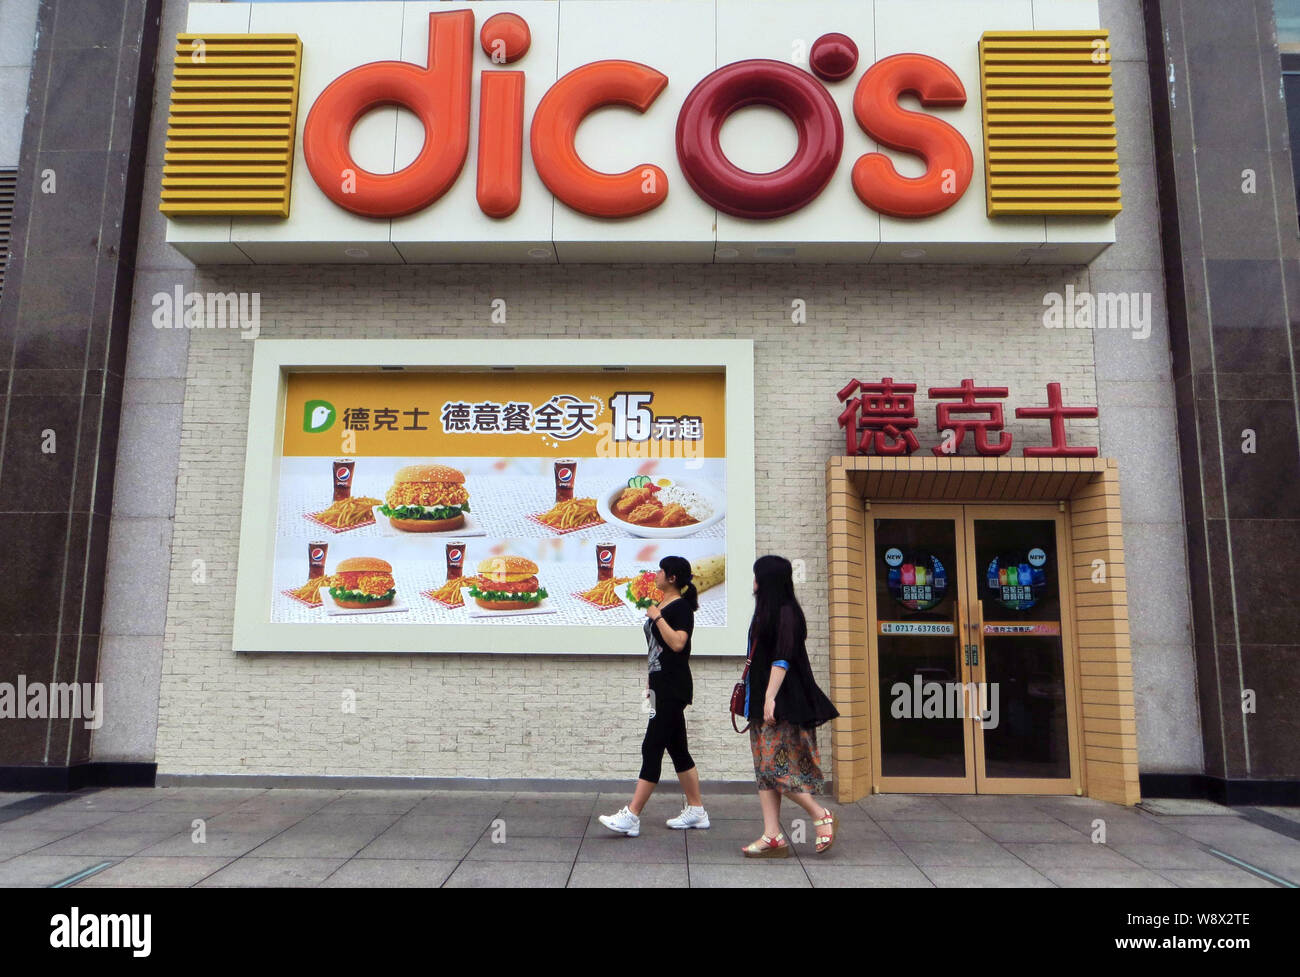 --FILE--pedoni a piedi passato un Dicos un fast food ristorante a Yichang city, porcellane centrale provincia di Hubei, 27 giugno 2014. Cibo cinese sono le catene ai Foto Stock